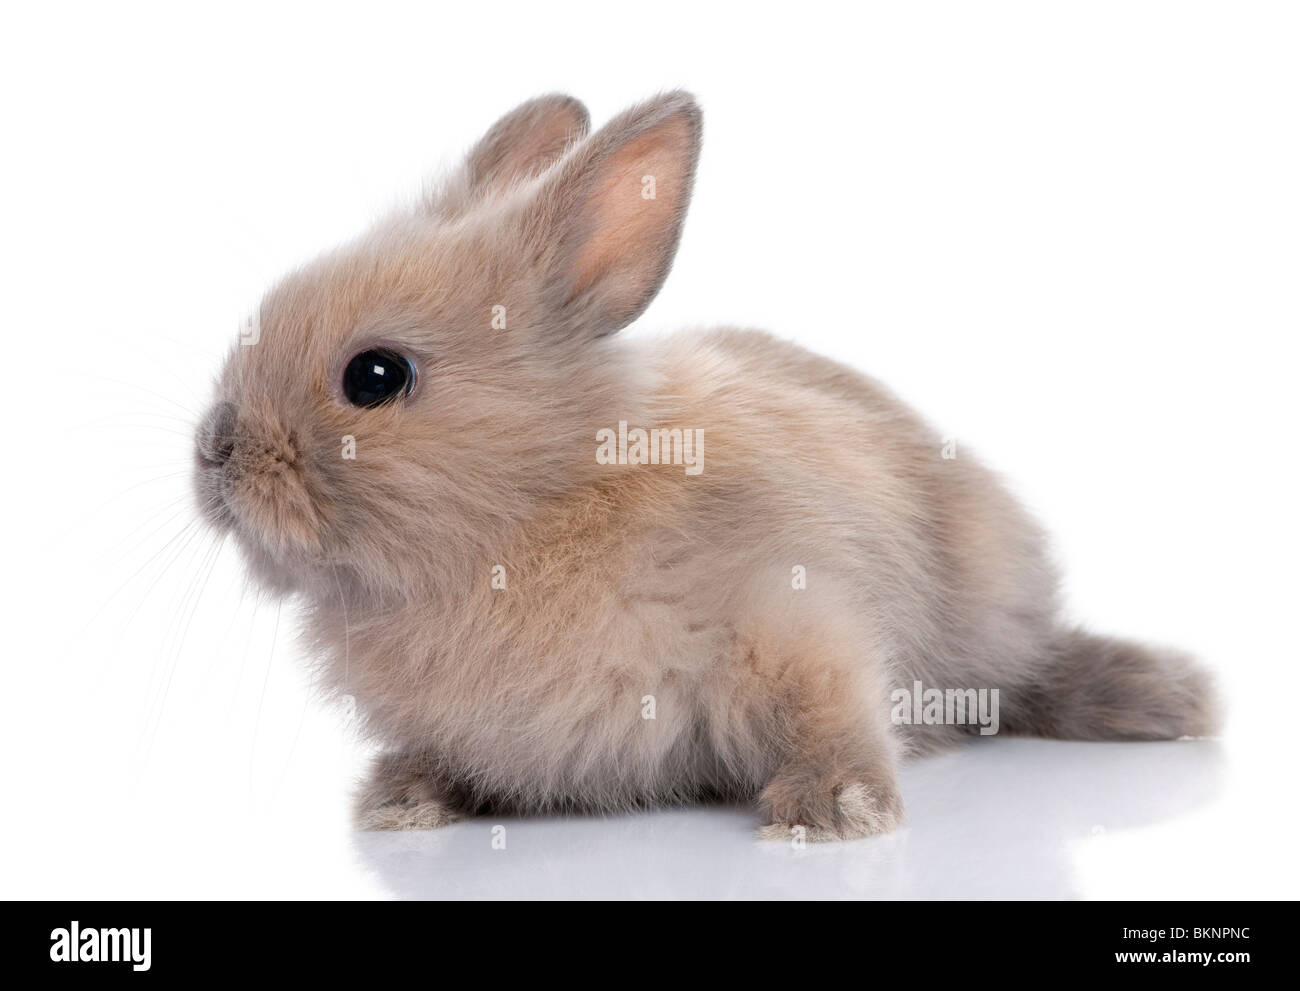 Brown baby coniglio, 5 settimane di età, di fronte a uno sfondo bianco Foto Stock